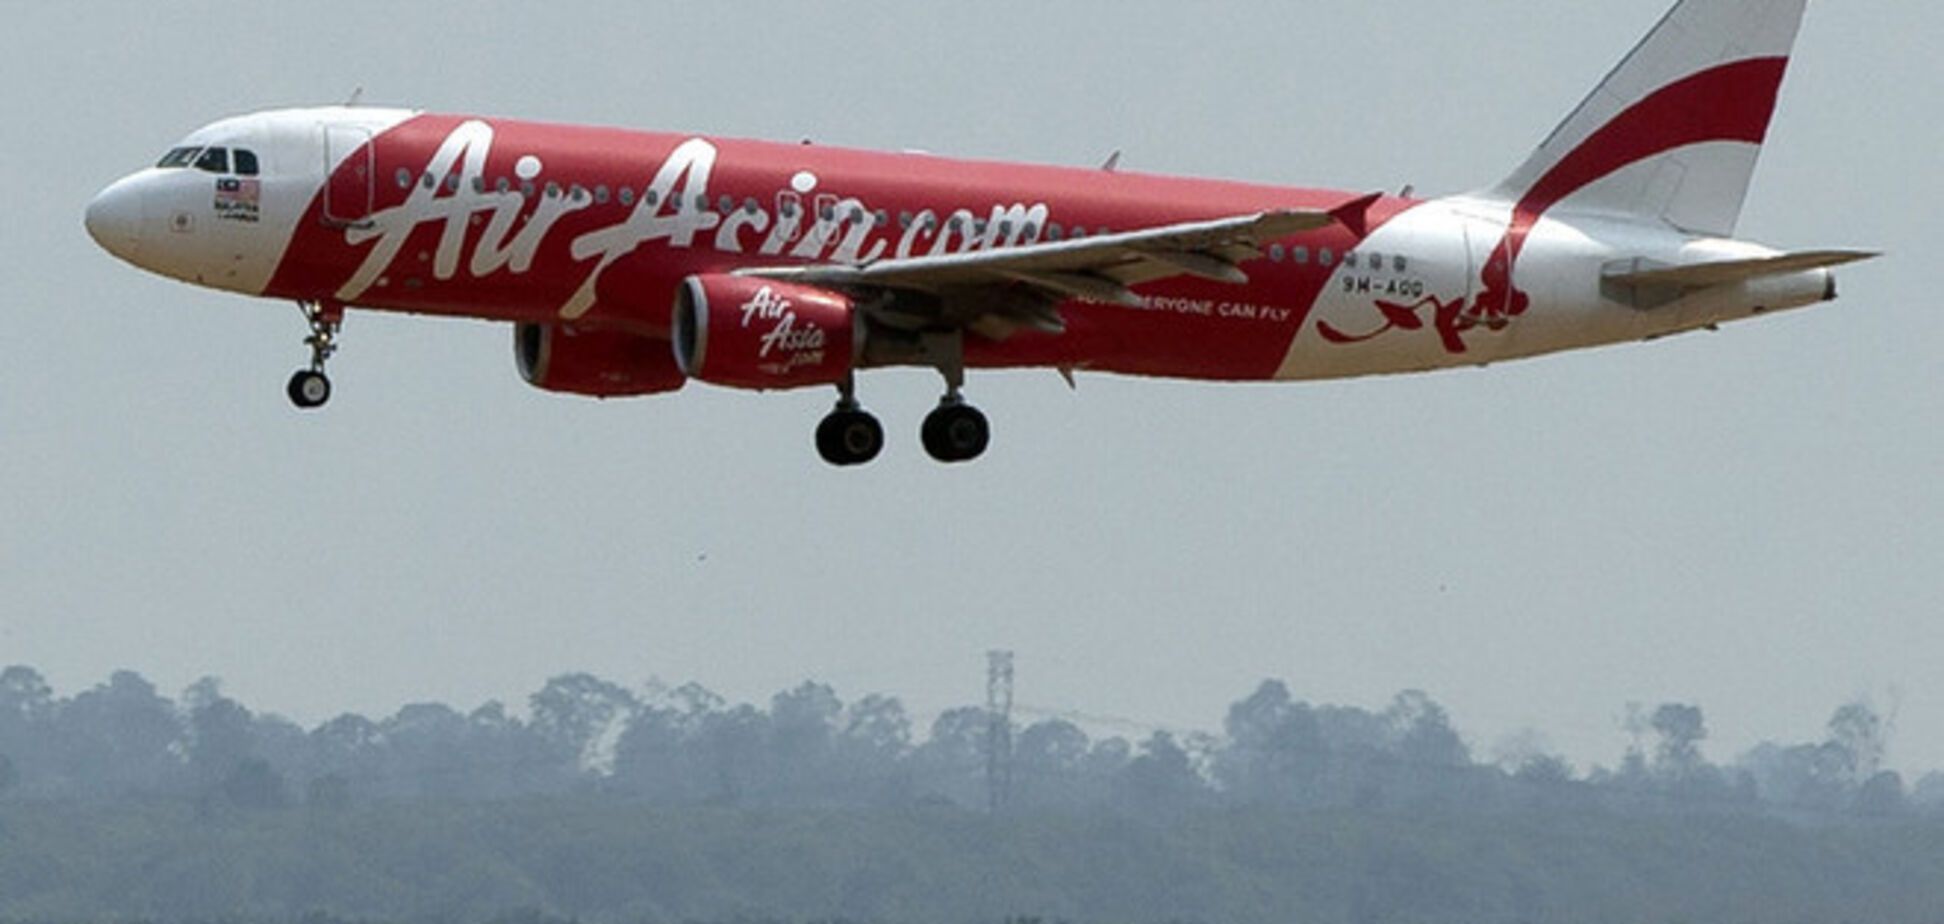 Фюзеляж самолёта AirAsia обнаружен на глубине 30 метров на дне моря - СМИ